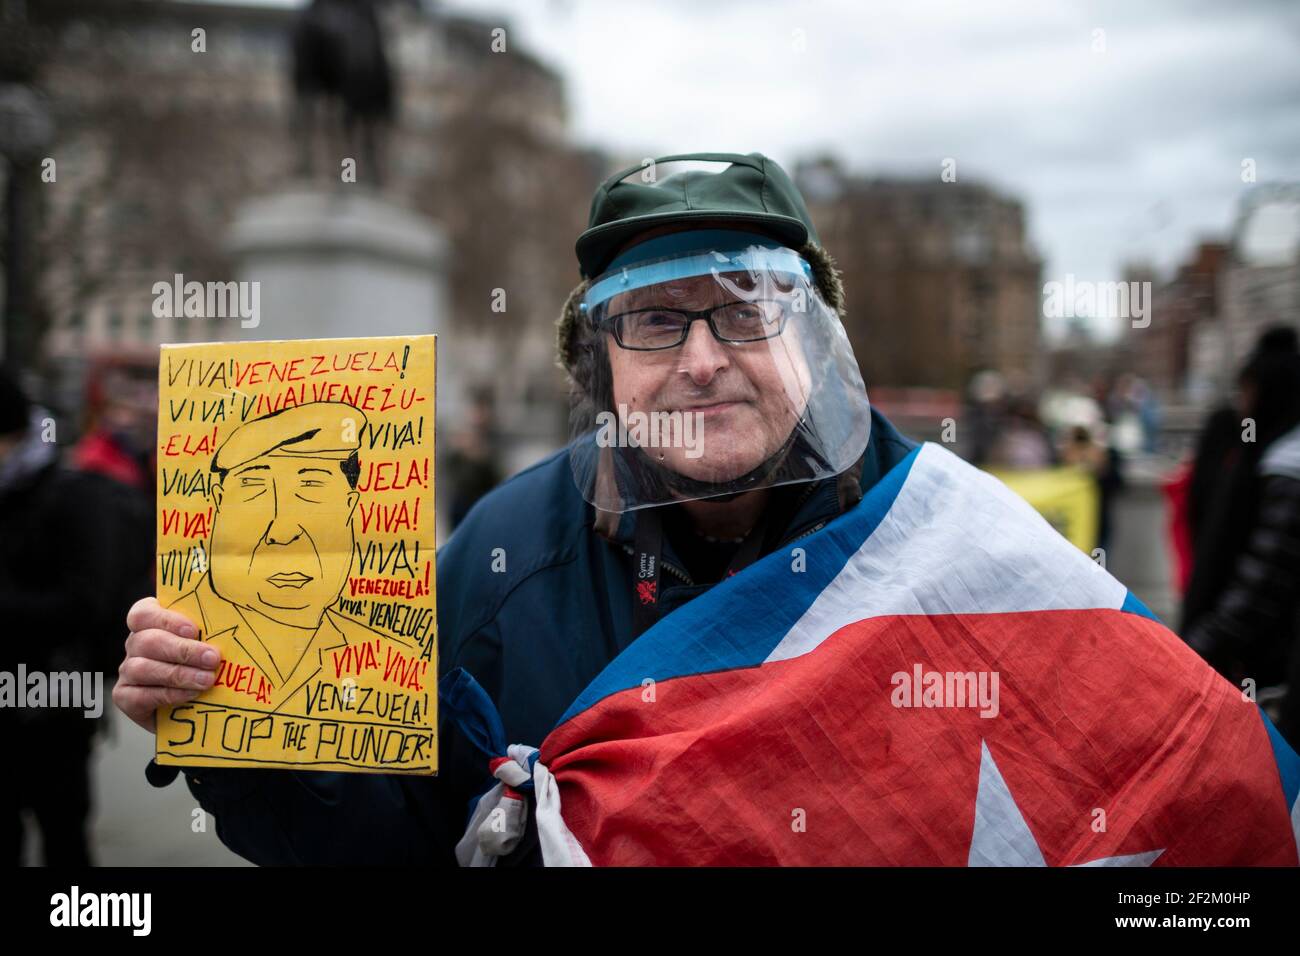 Protestant in Gesichtsschild mit Plakat und mit kubanischer Flagge drapiert, bei Demonstration gegen US-Beteiligung in Kuba, Trafalgar Square, London, 12. Dezember Stockfoto